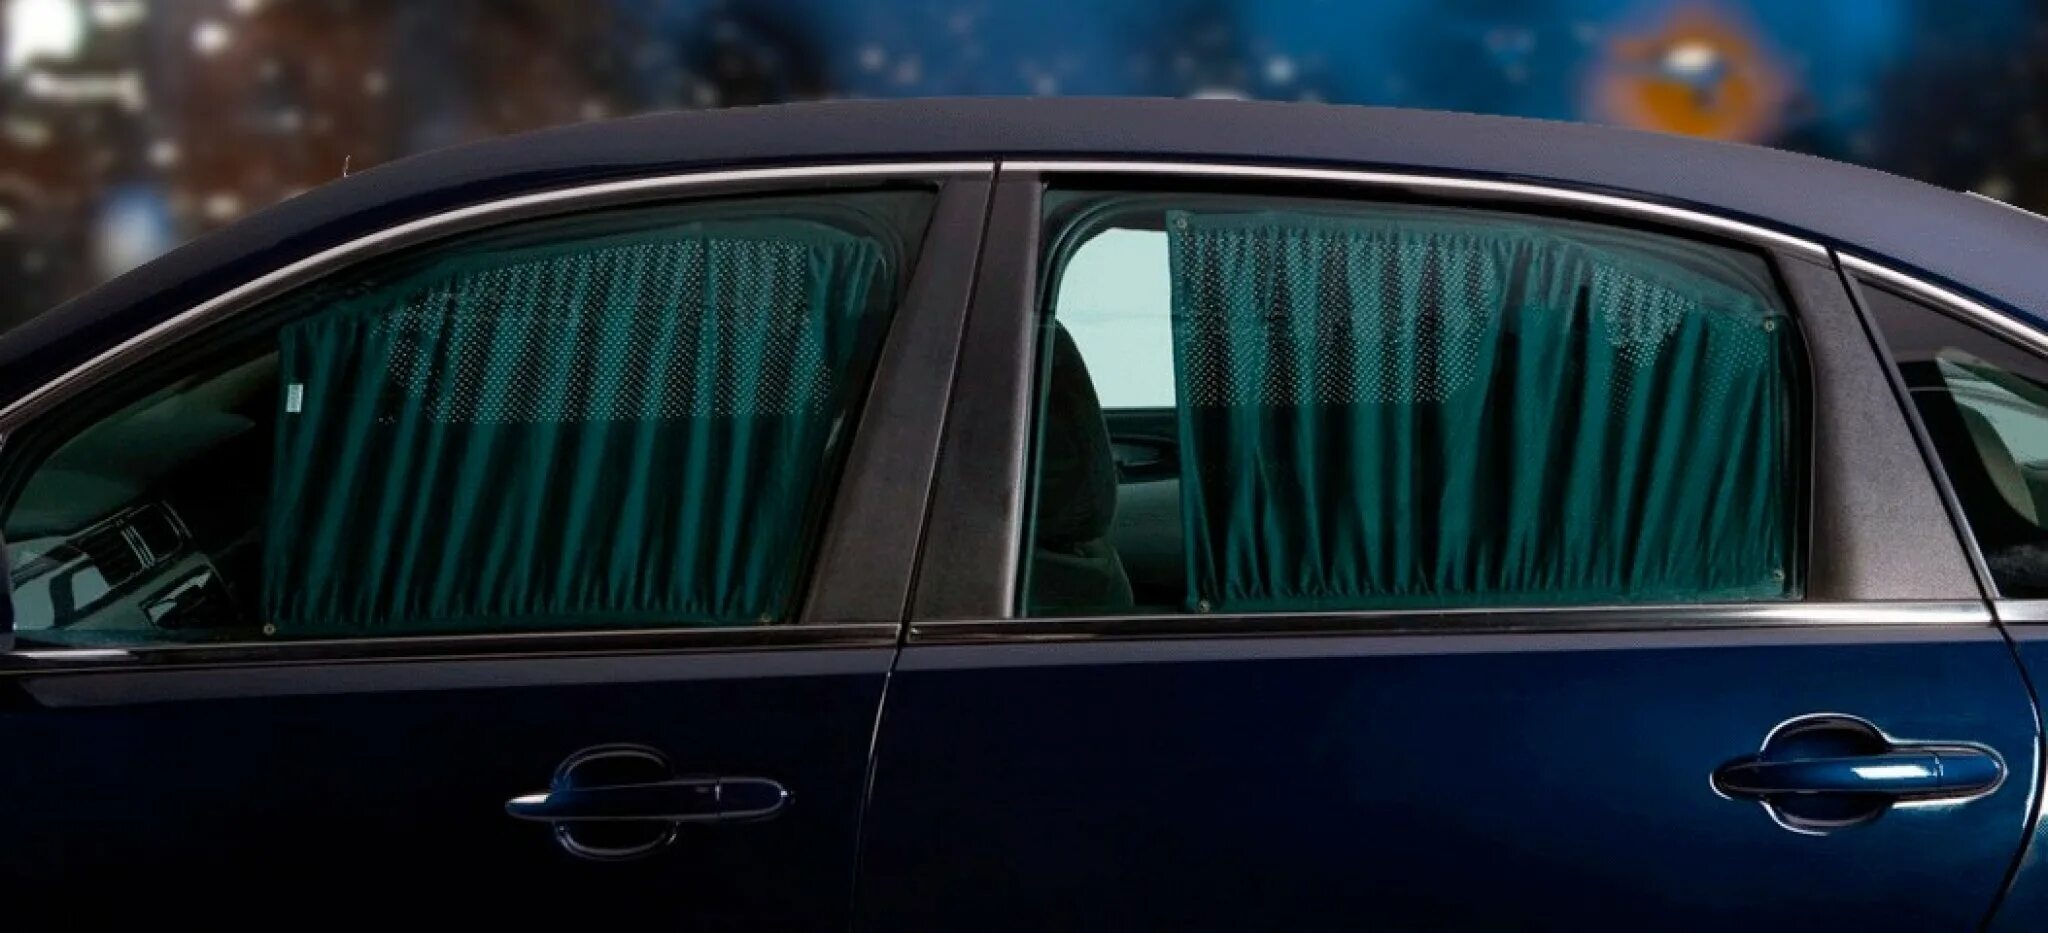 Разрешены шторки. Окно авто. Окно машины снаружи. Приоткрытое окно автомобиля. Шторки разрешены на передние стекла.